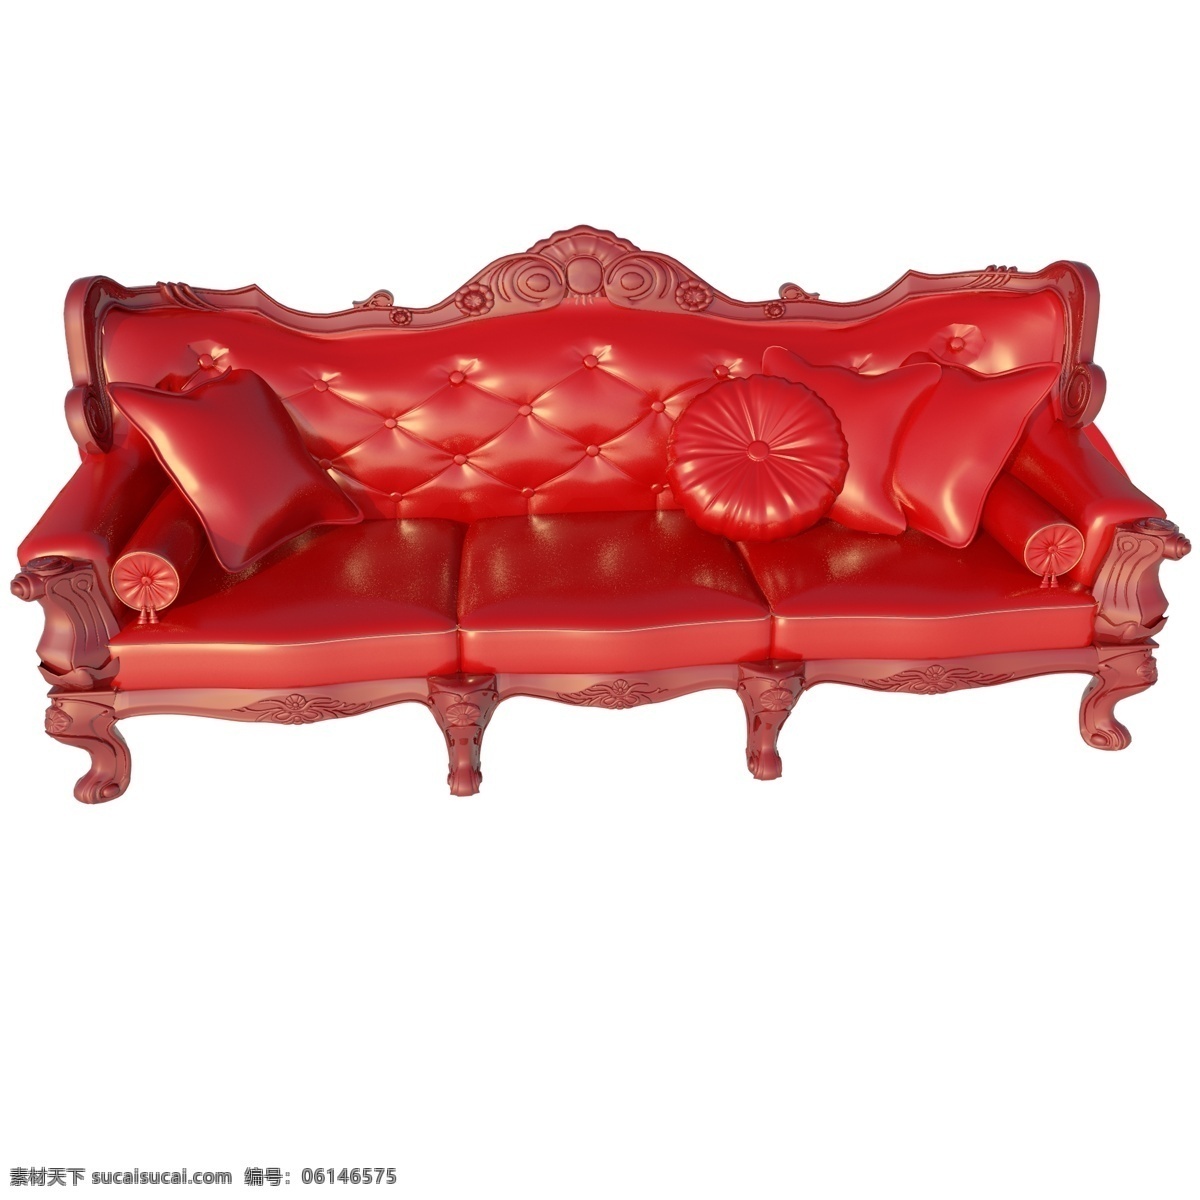 大红色沙发 圆形靠垫 红色沙发 古风 软座